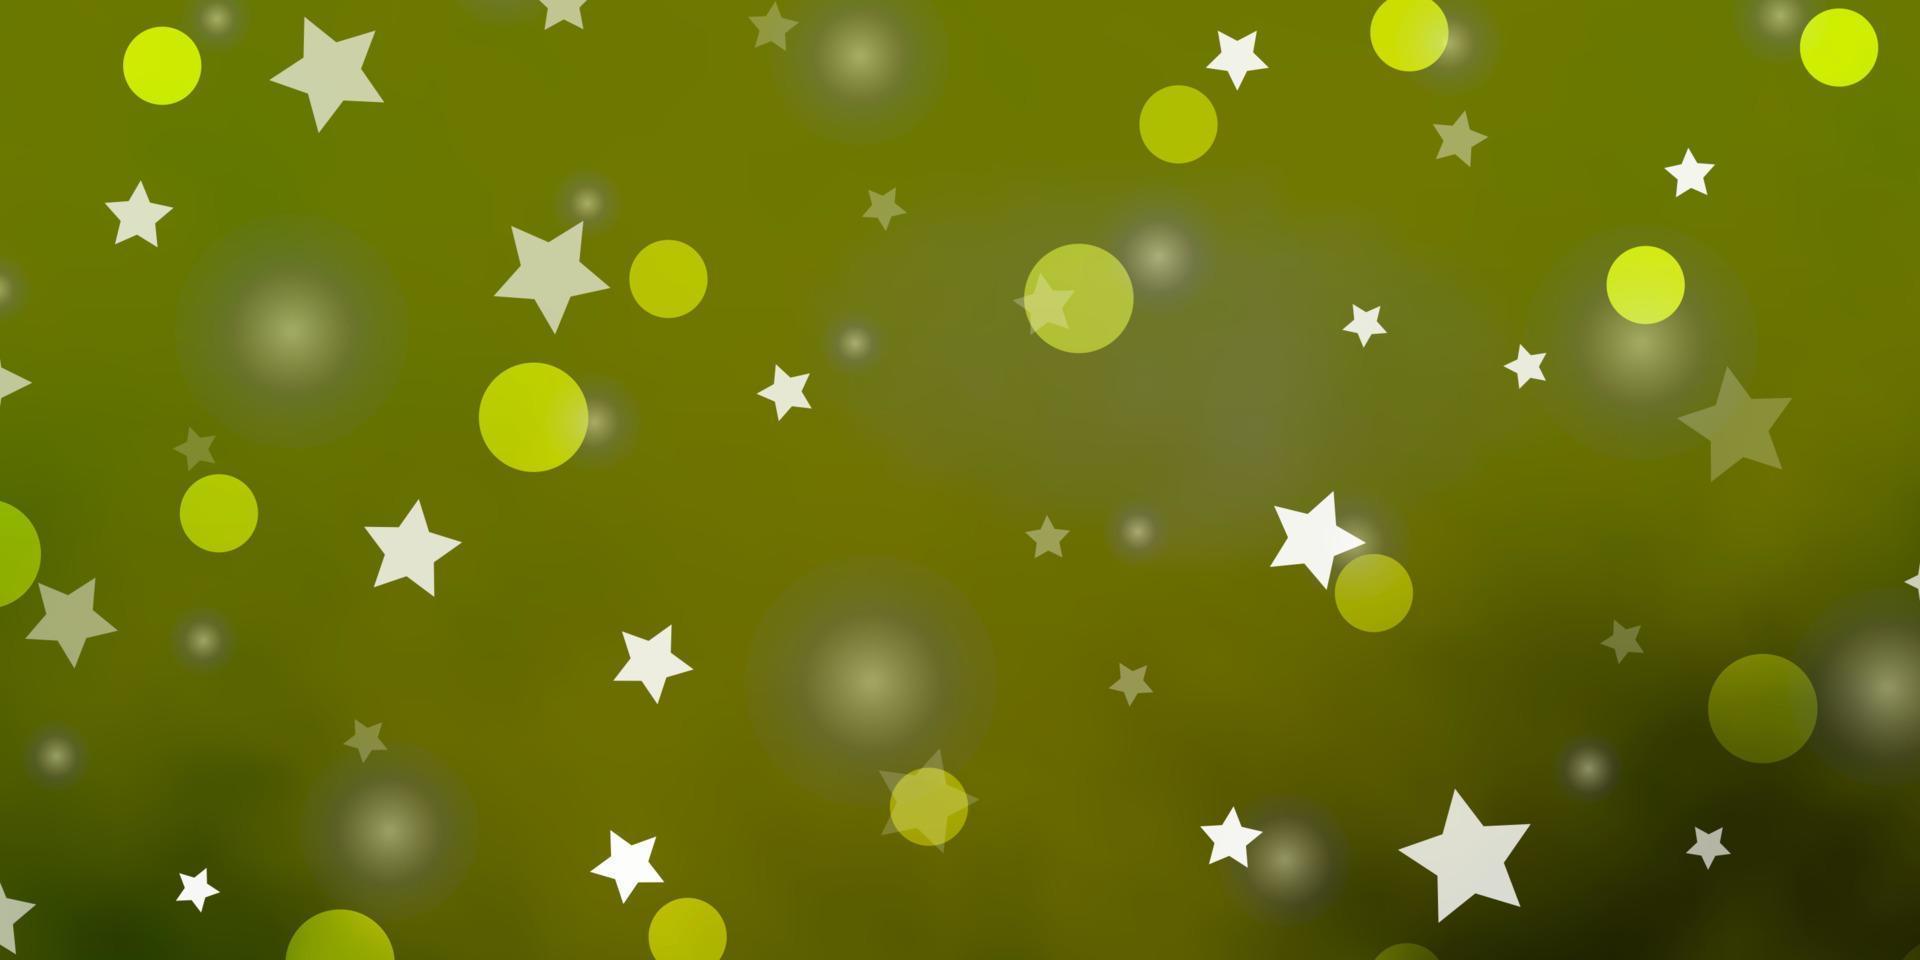 ljusgrön, gul vektormall med cirklar, stjärnor. vektor